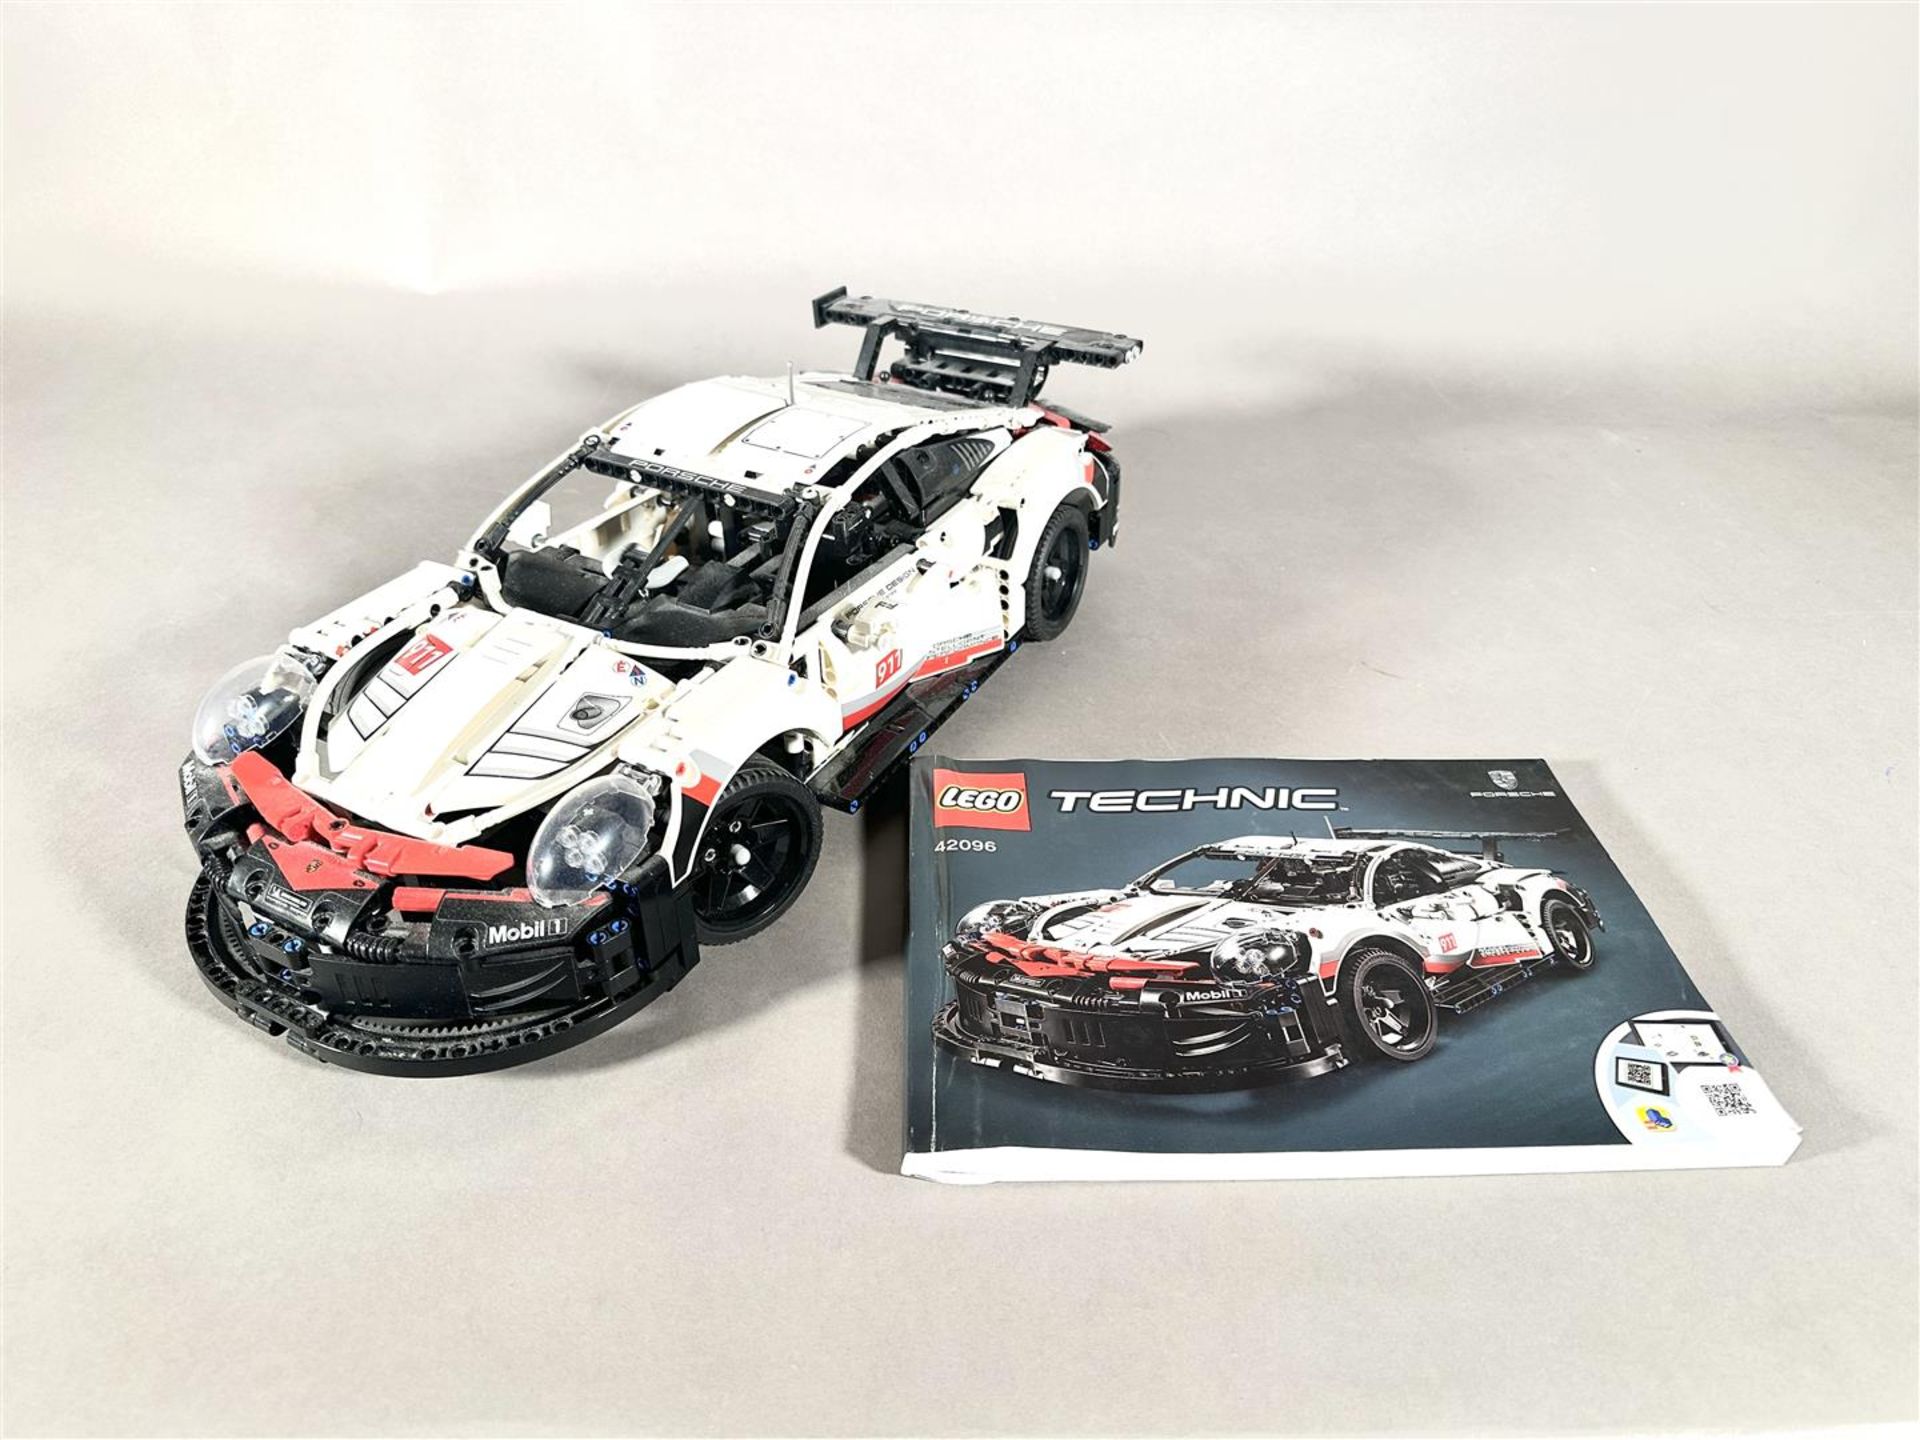 LEGO - Technic - 42096 - Lego Porsche 911 RSR Lego Technic - 2020